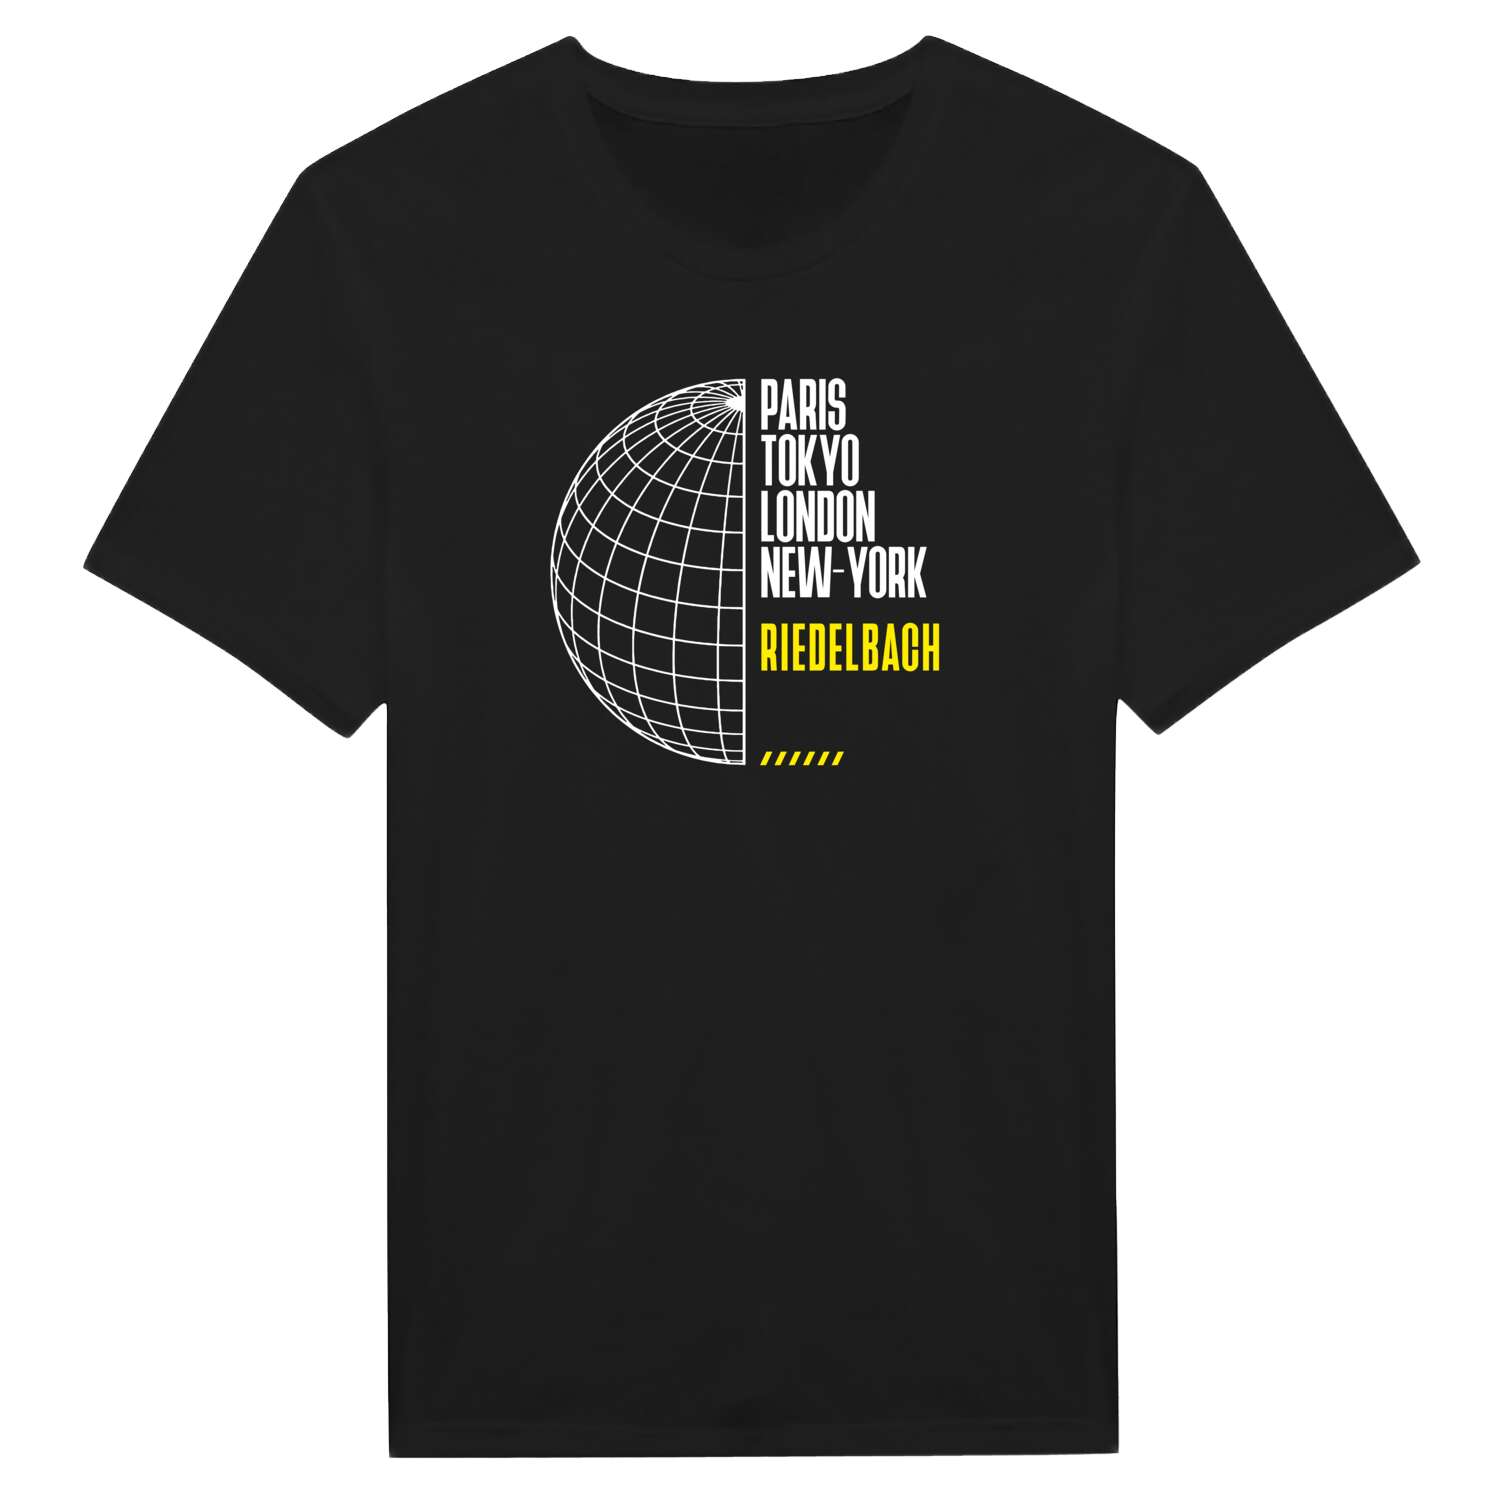 Riedelbach T-Shirt »Paris Tokyo London«